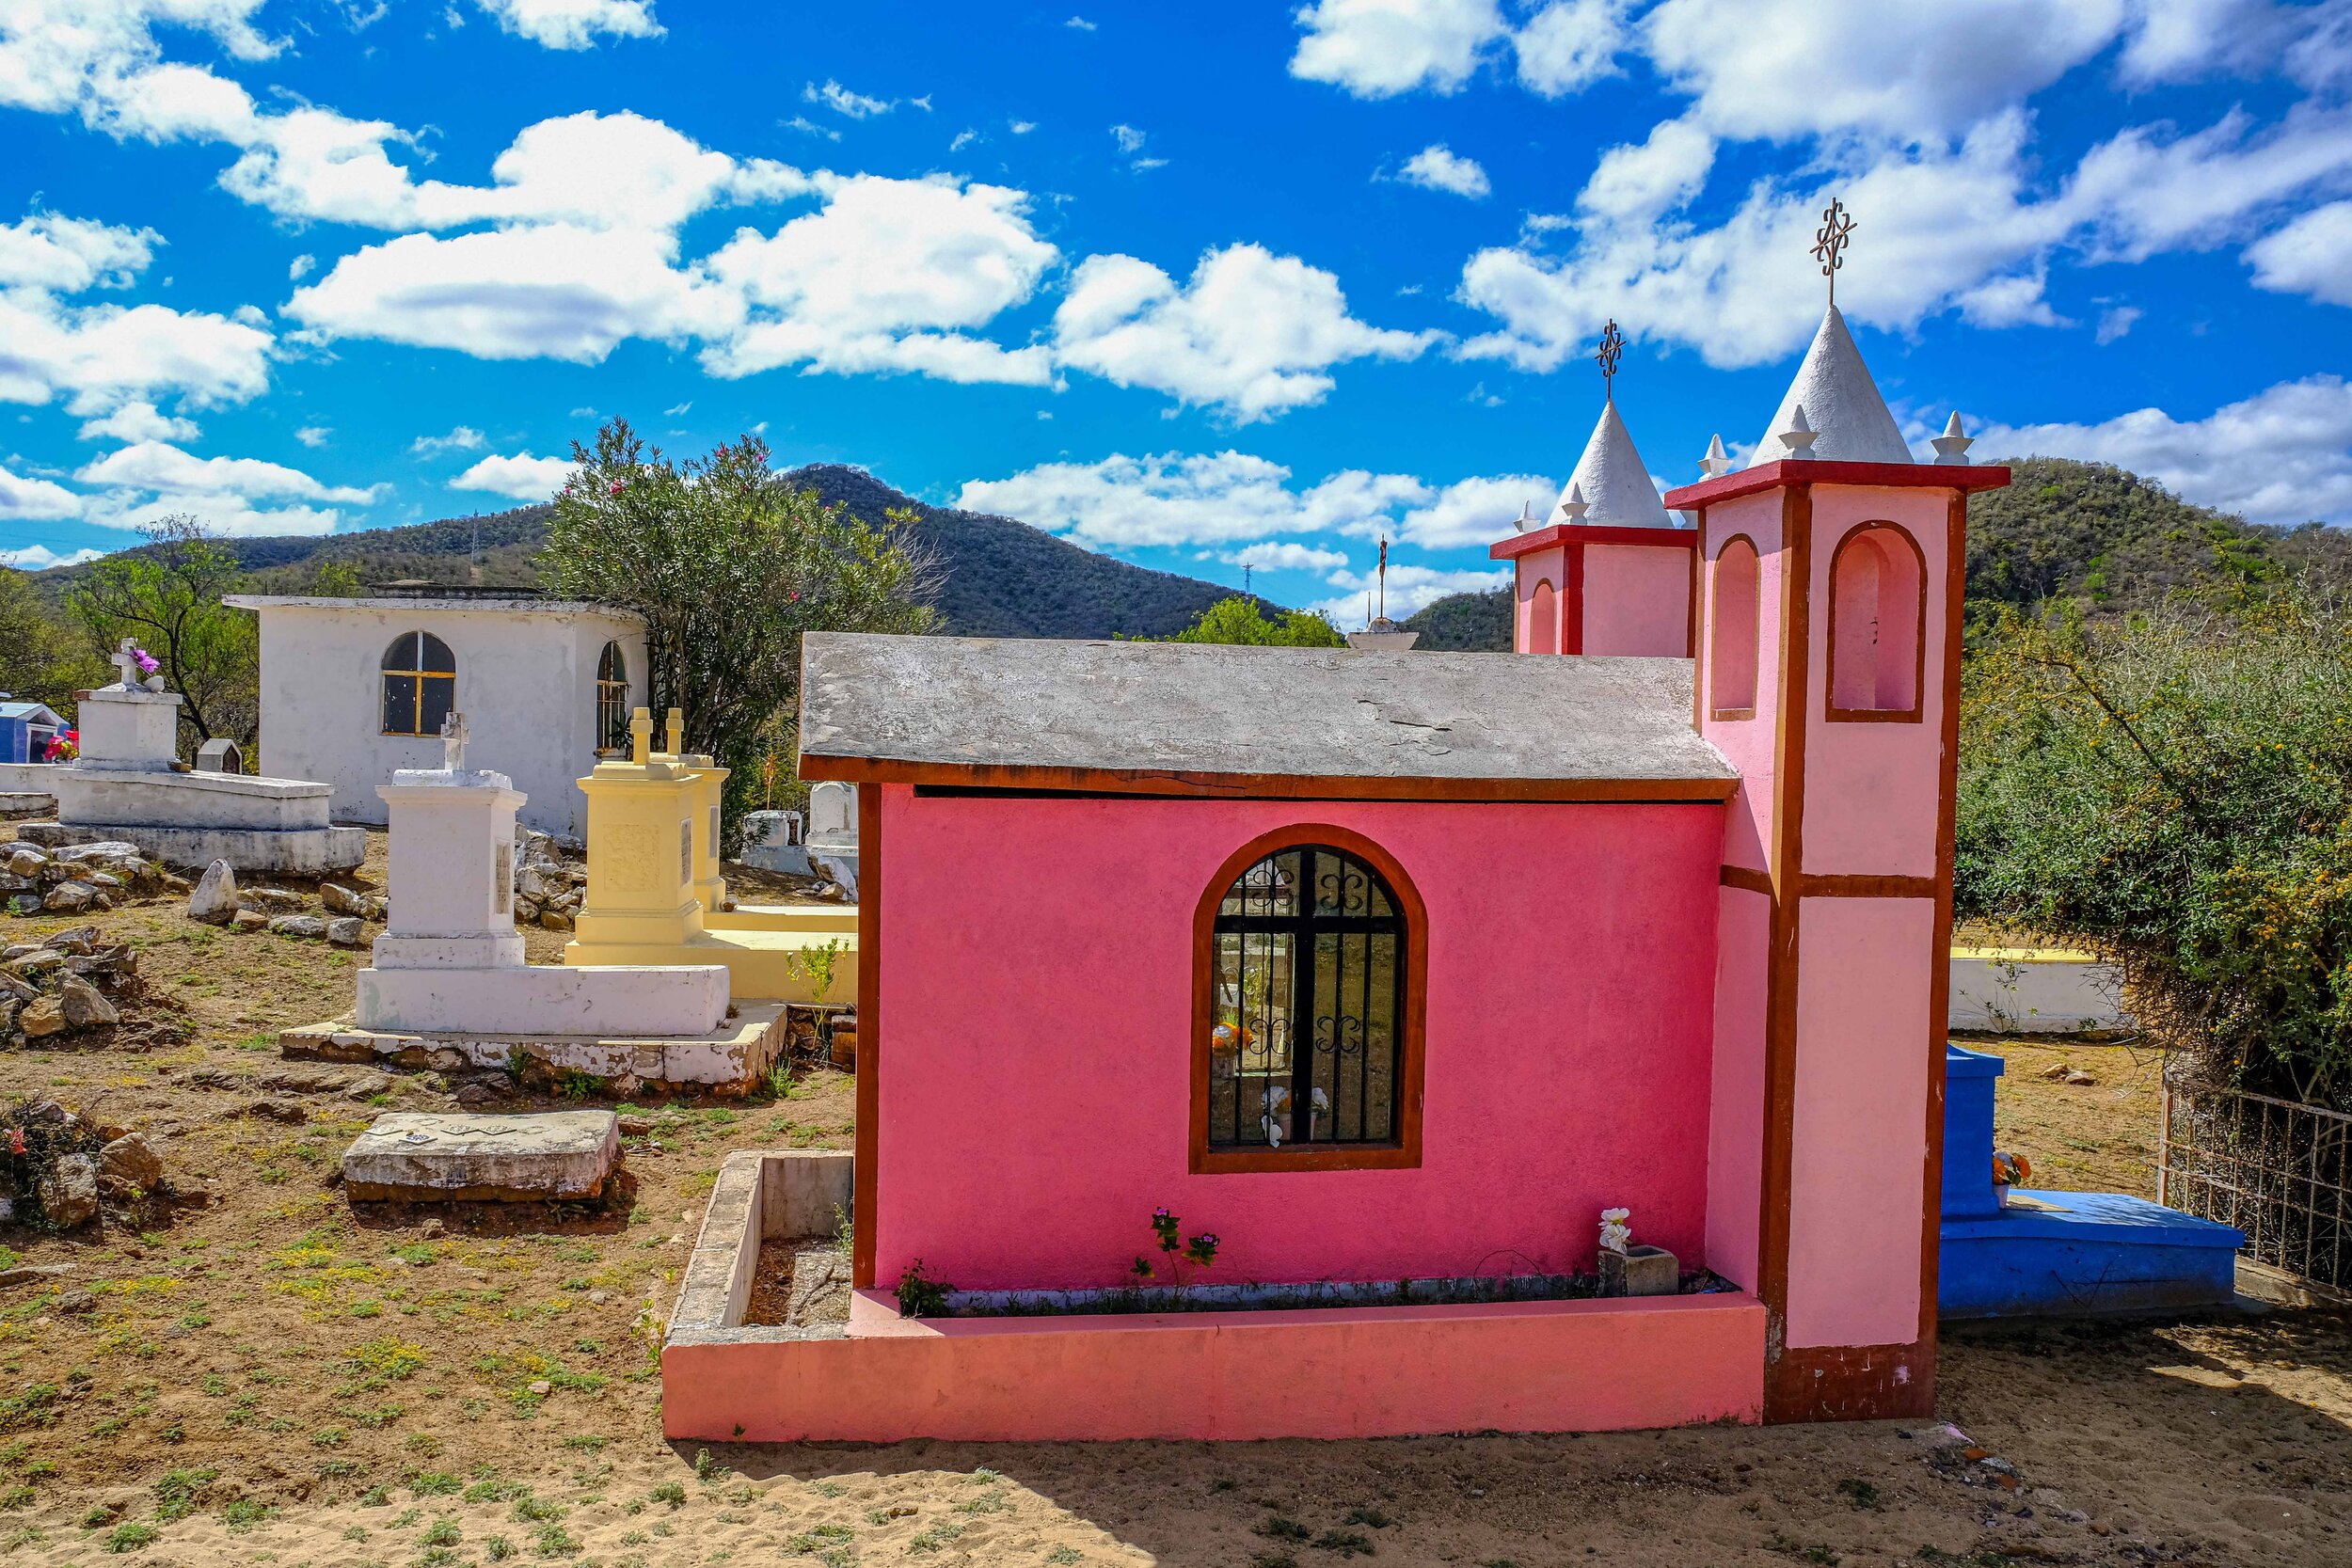  El Fiundo Cemetery, Baja California, Mexico 